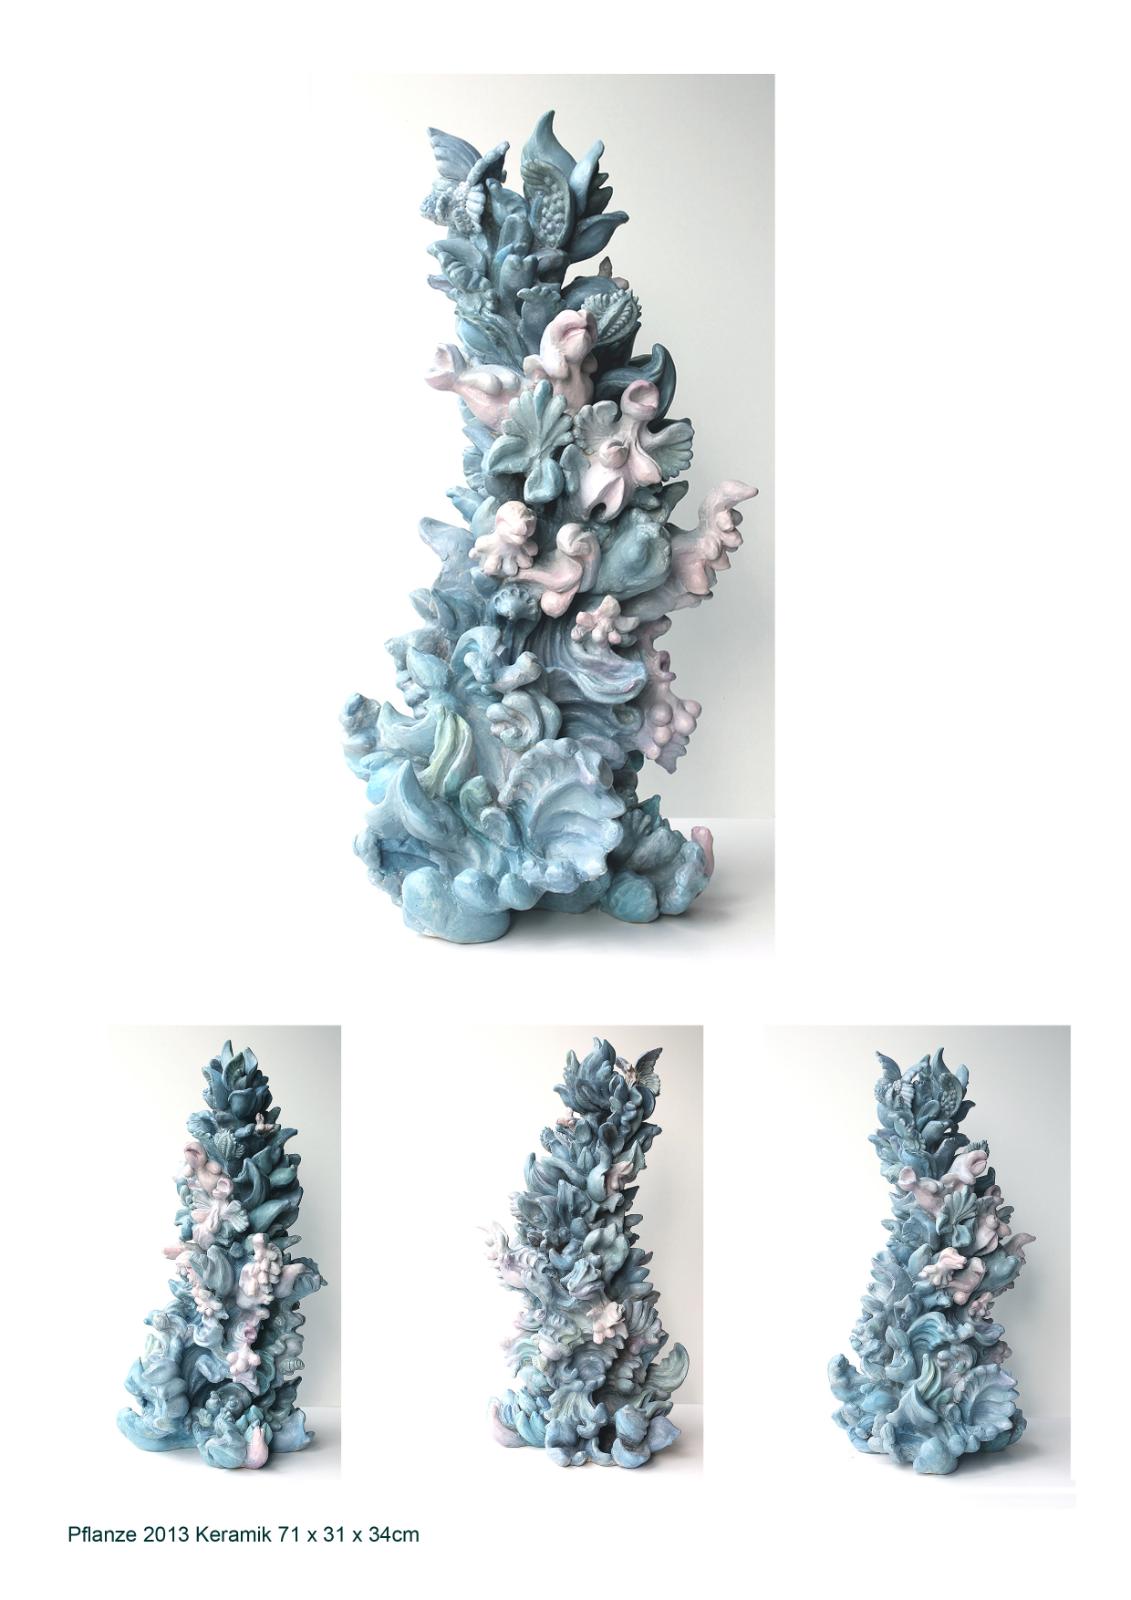 Weitere Ansichten: Miriam Lenk, Blaue Pflanze 2013, Keramik, Original, 3 Ansichten, Preis auf Anfrage